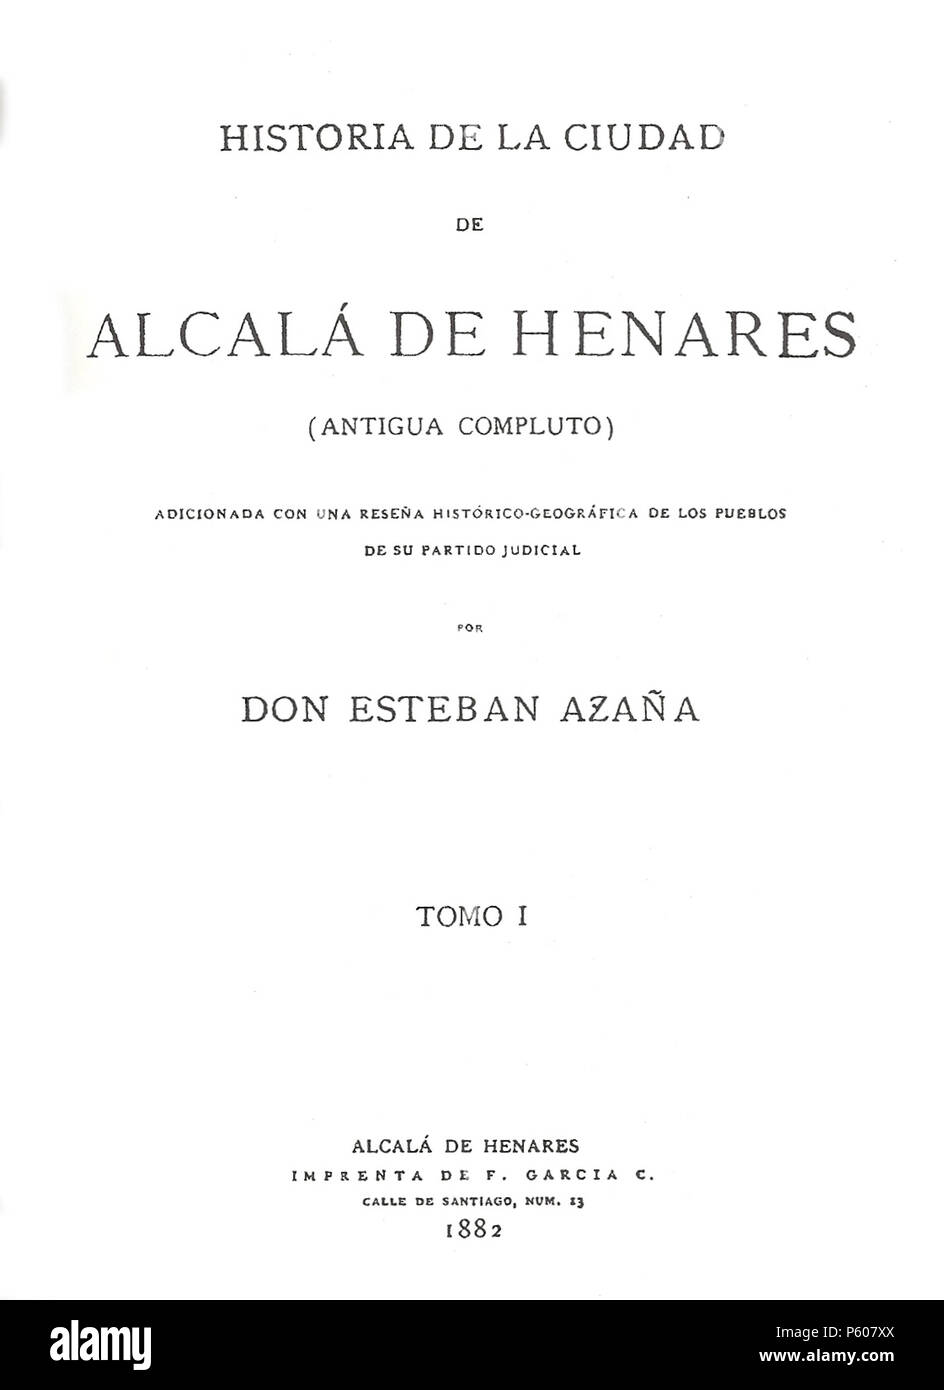 531 Esteban Azaña Catarinéu (1882) Historia de Alcalá de Henares Stock Photo